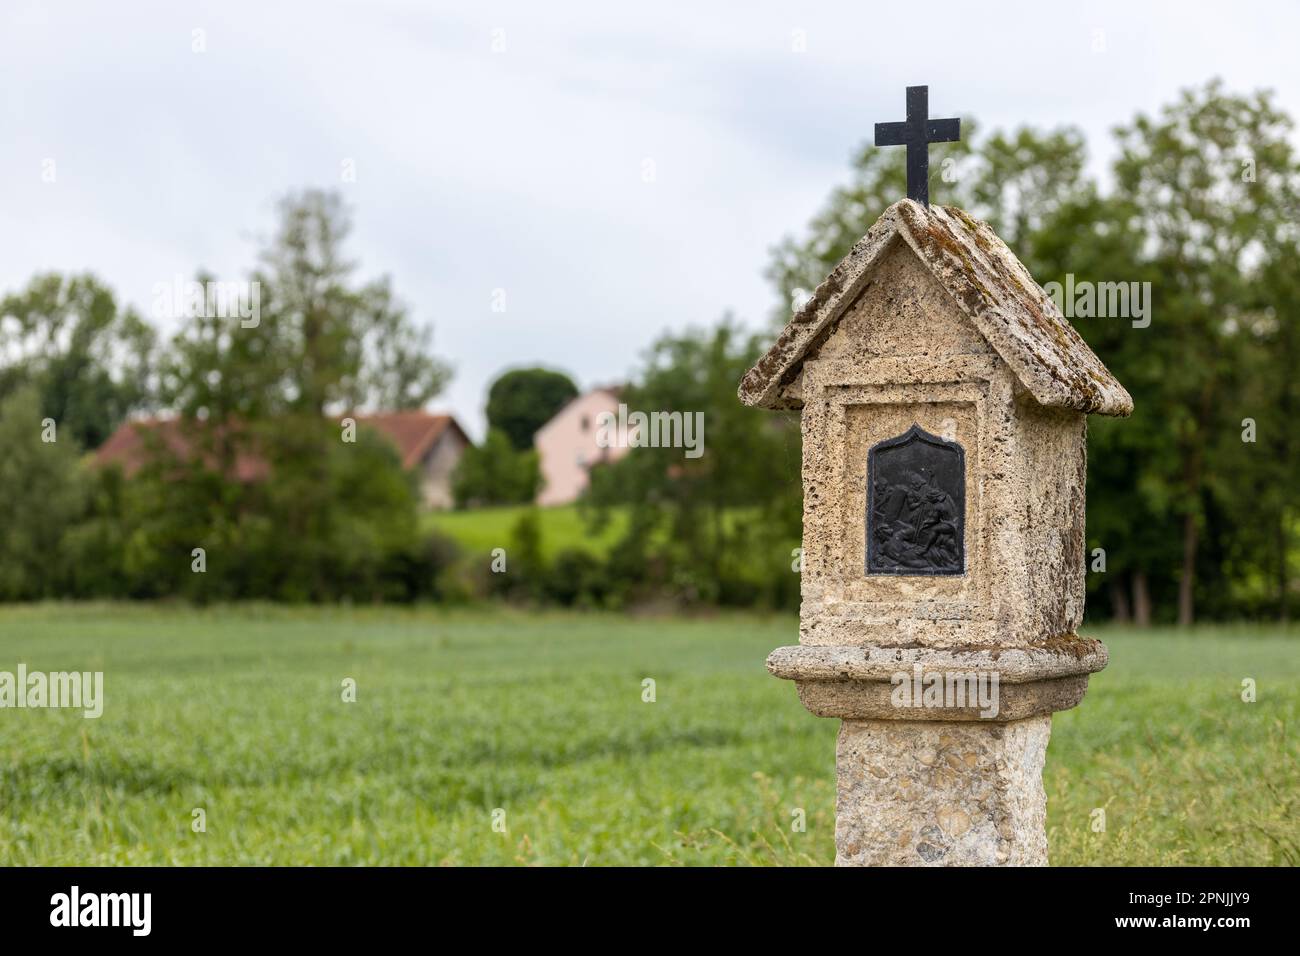 Katholischer Schrein mit religiösem Image und Kurzifix in ländlicher Landschaft im Inn-Tal, Bayern Stockfoto